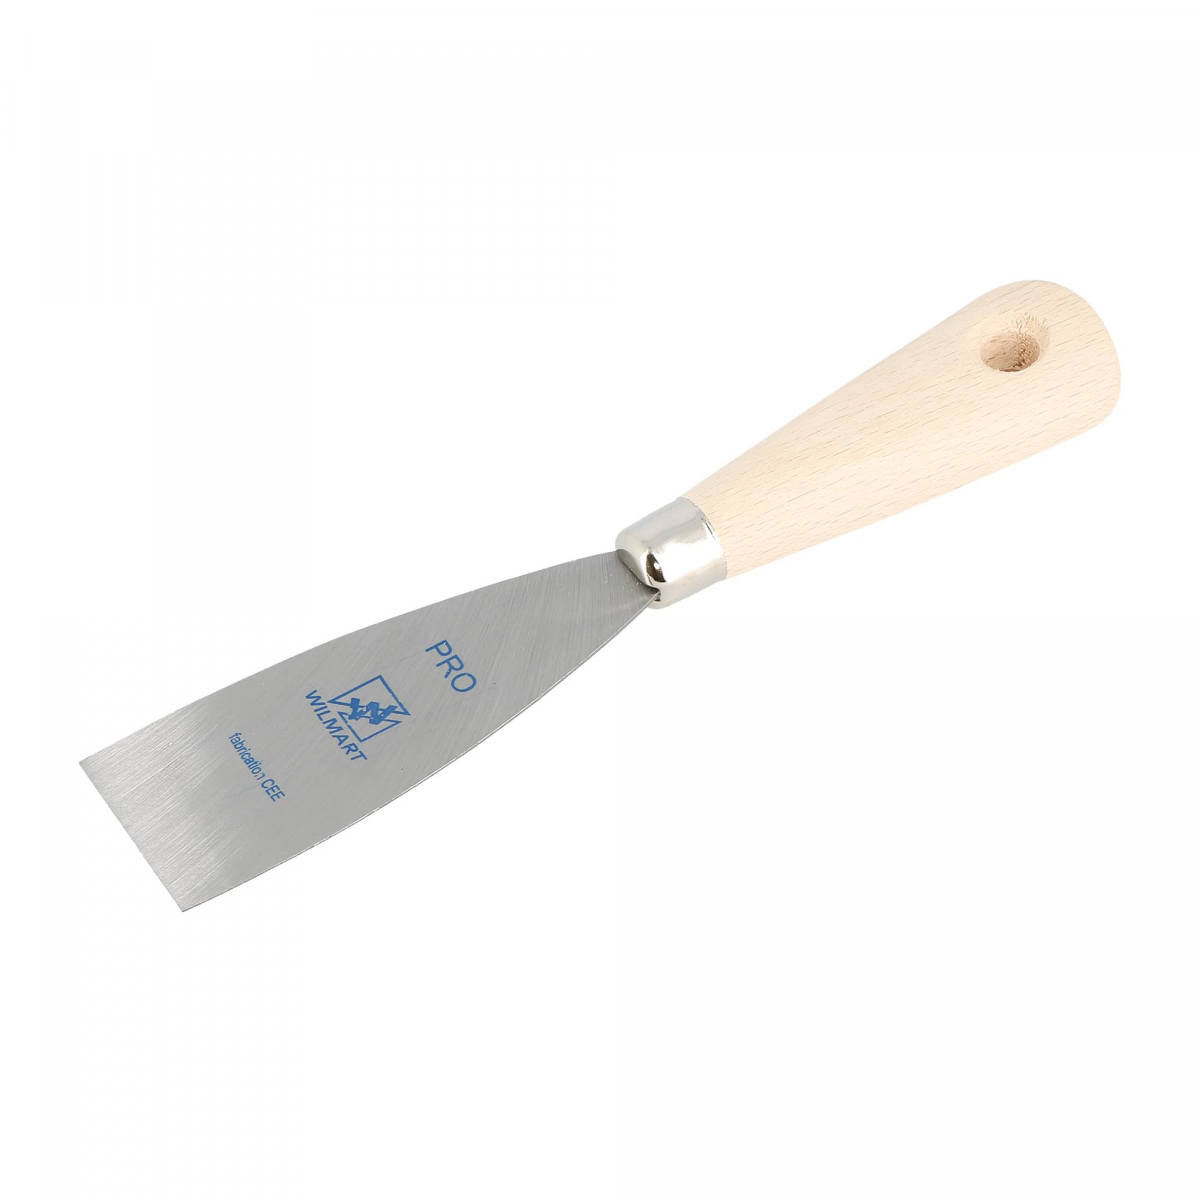 Couteau de peintre lame acier 4 cm - Wilmart